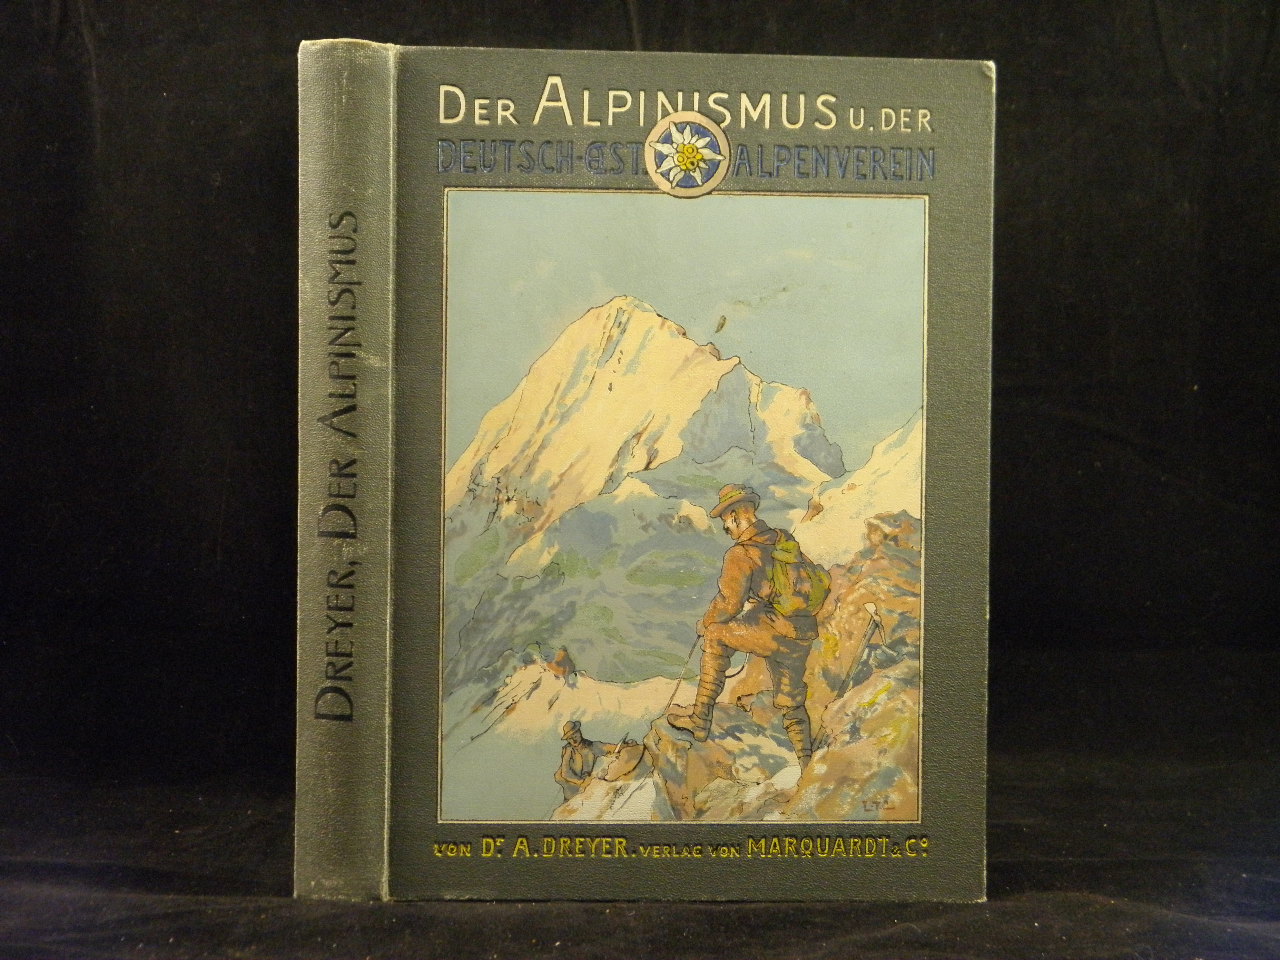 ALPEN.-  DREYER, A.: - Der Alpinismus und der Deutsch-sterreichische Alpenverein.  Seine Entwicklung, Seine Bedeutung, Seine Zukunft.